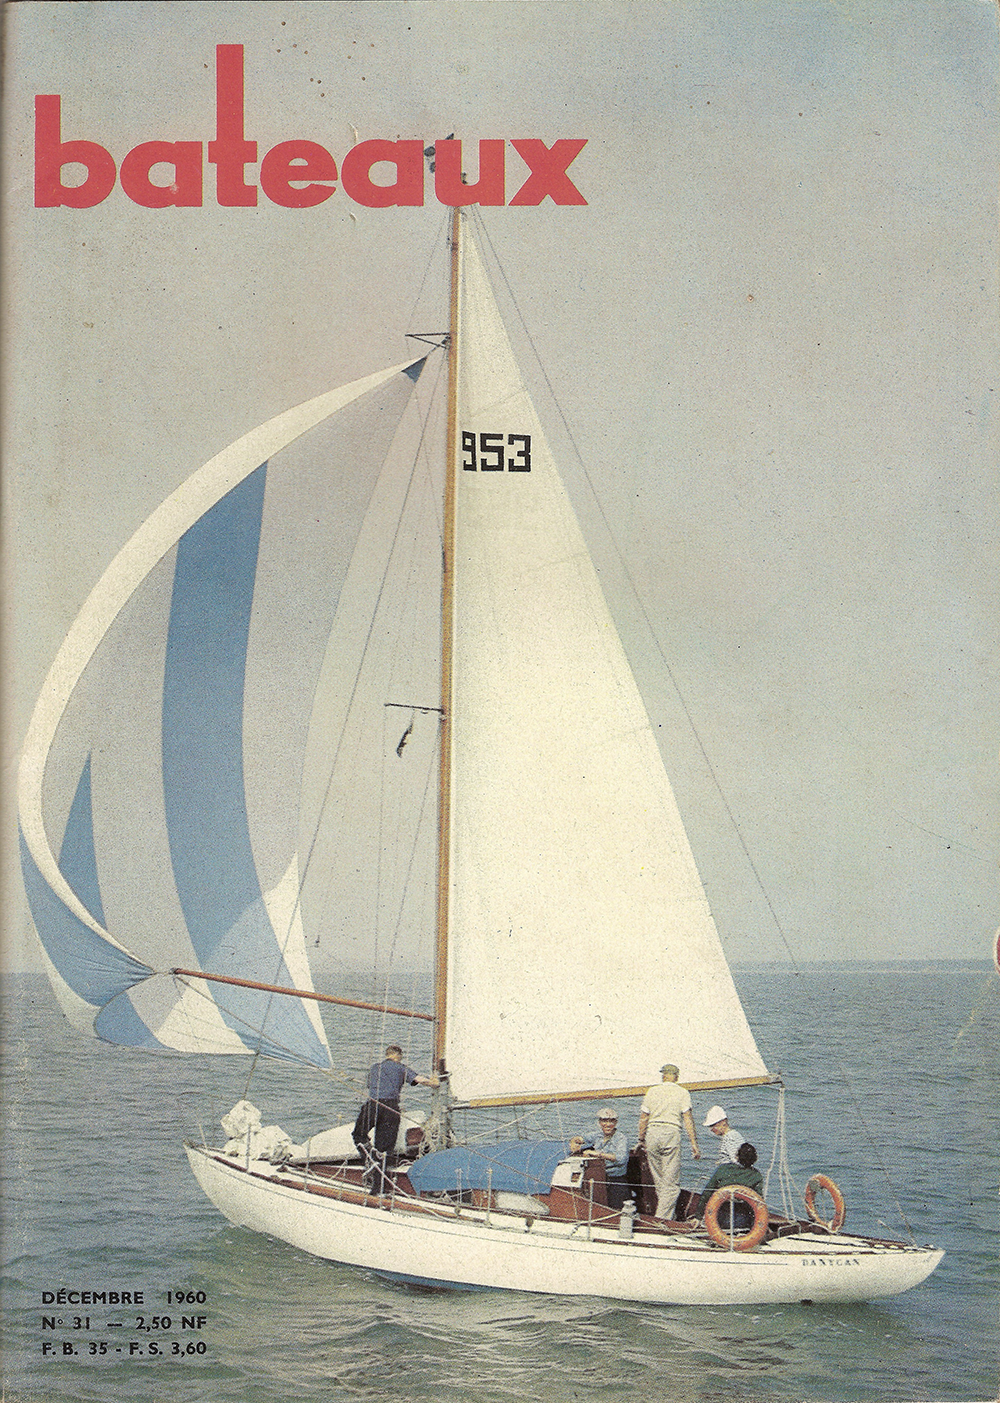 Revue Bateaux n° 31 de décembre 1960 [107] – première de couverture. Photo : P. Groult, prise lors de Cowes-La Corogne – Guy Tabarly debout et vu de dos en tenue claire dans le cockpit.